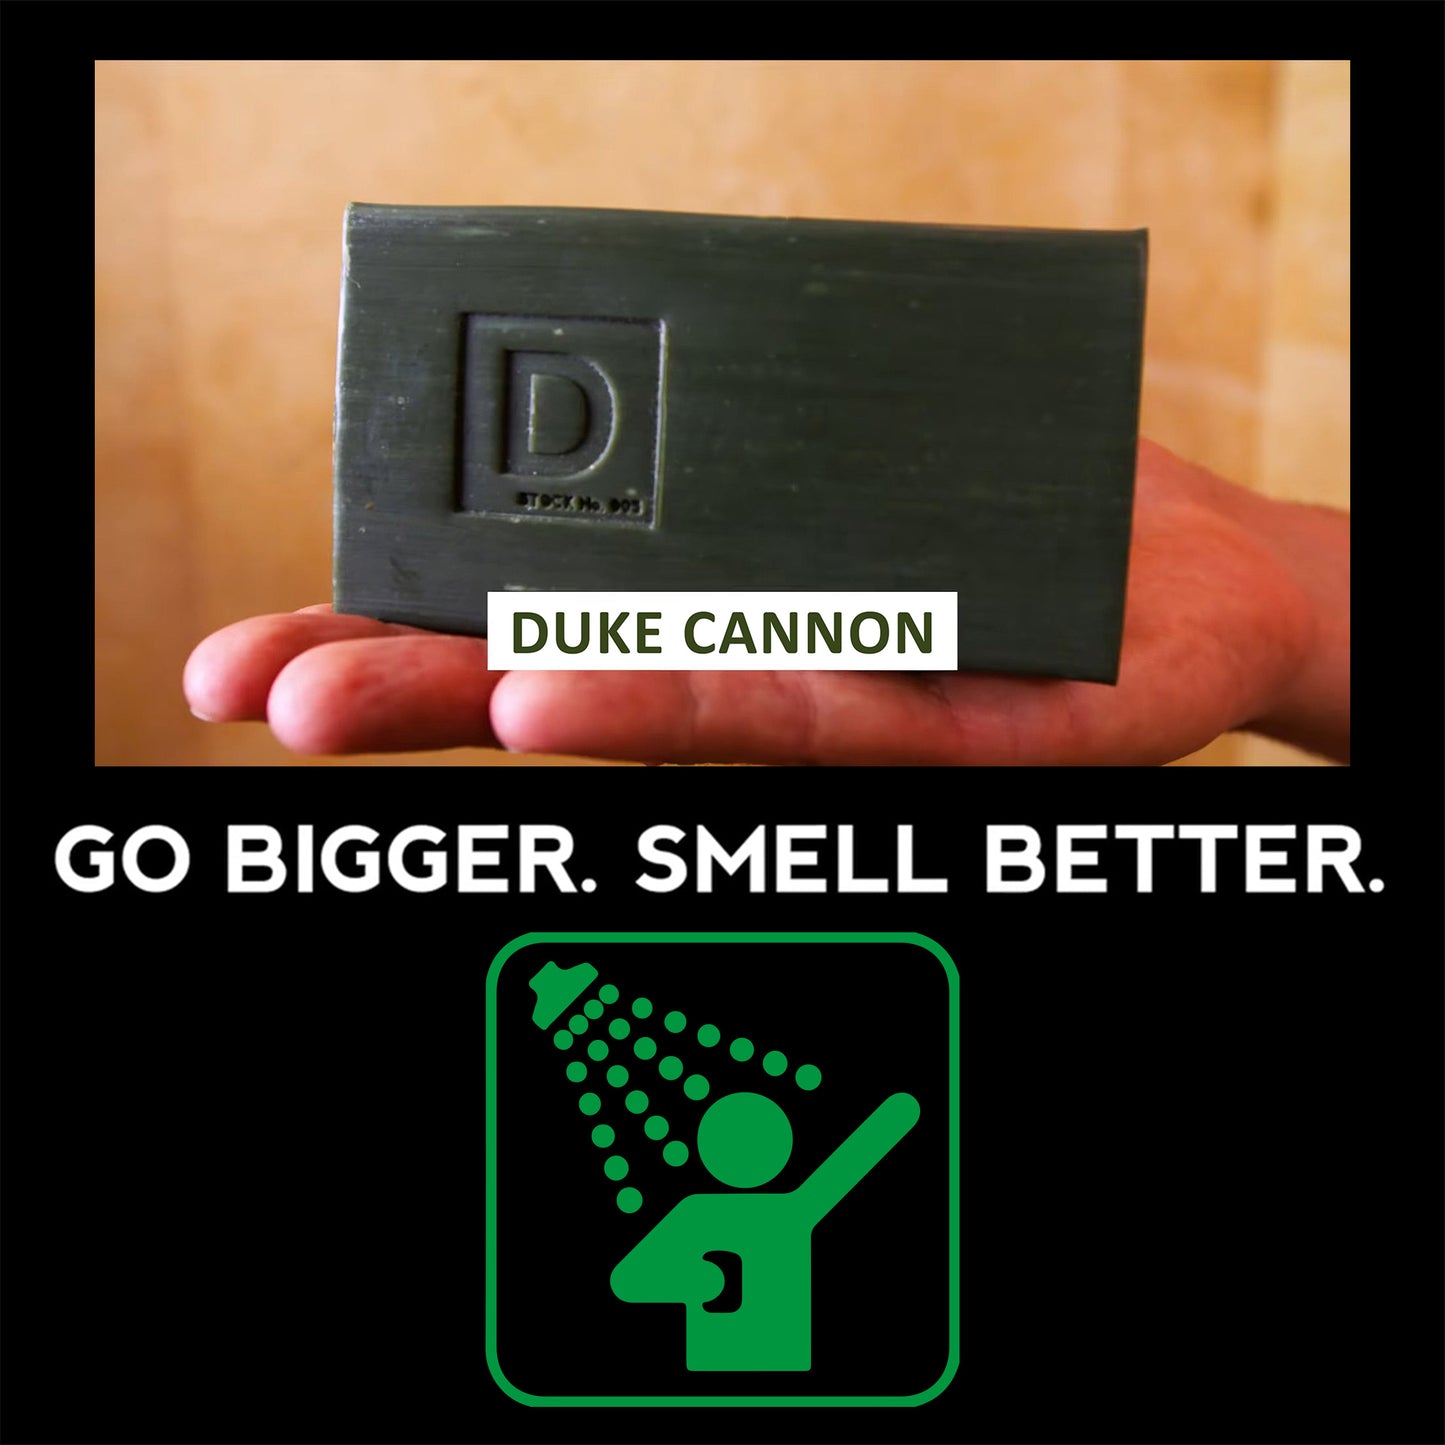 Big Ass Brick of Soap Campfire- Echte Männerseife von Duke Cannon aus den USA